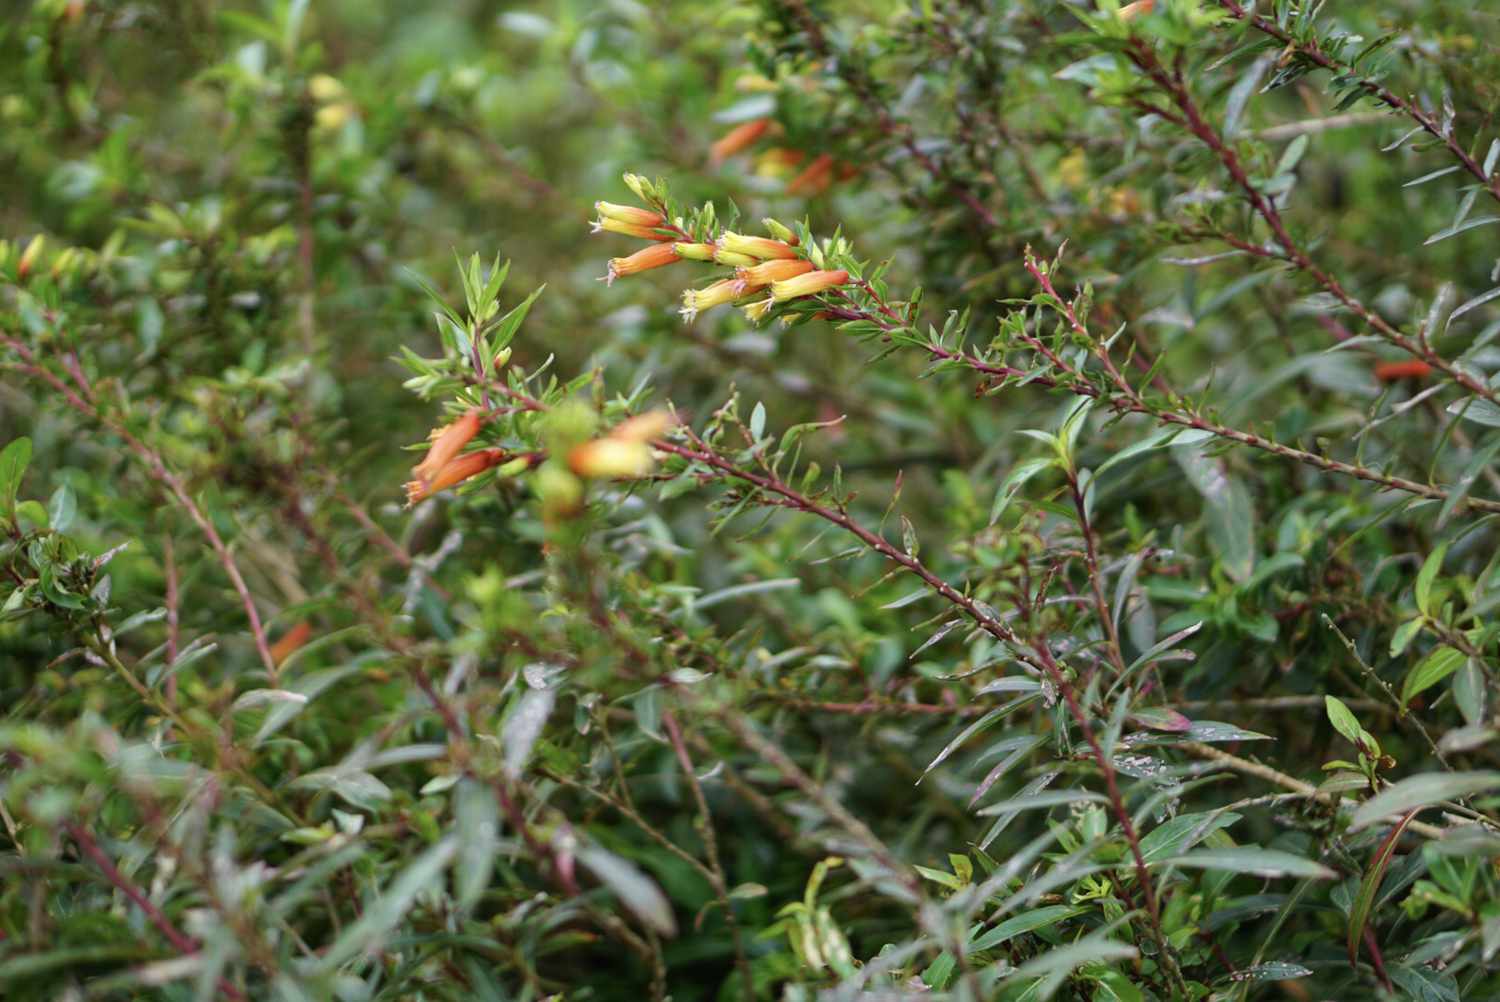 Arbusto de la planta del puro con ramas en forma de montículo y flores tubulares de color amarillo anaranjado